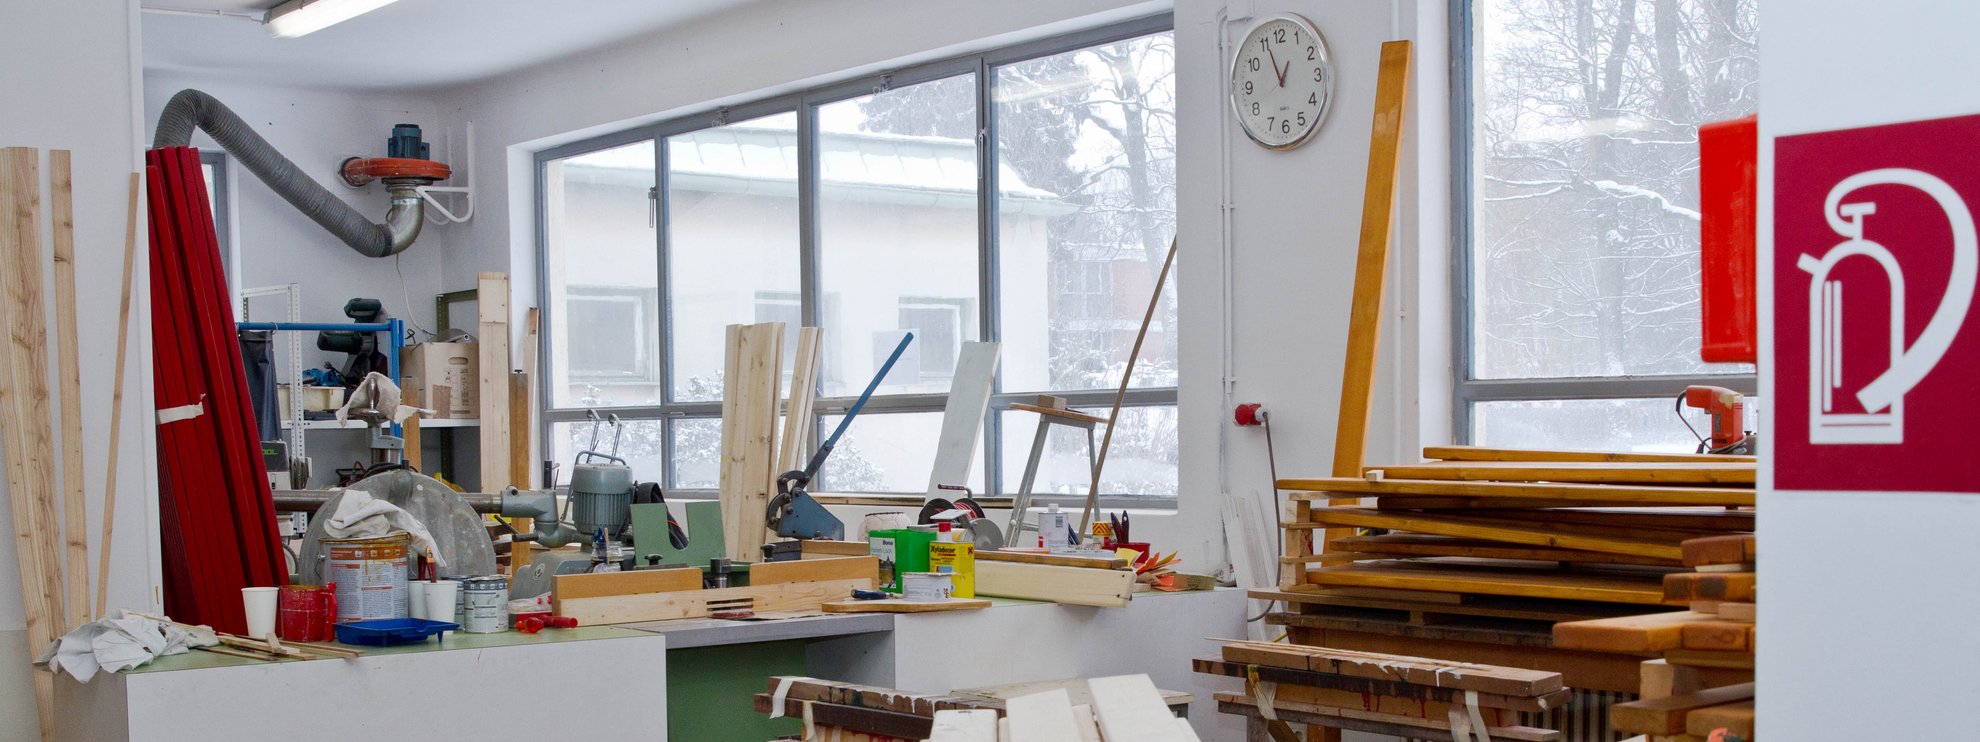 Blick in eine Werkstatt mit Holzbrettern, Farbtiegeln und Schneidemaschine